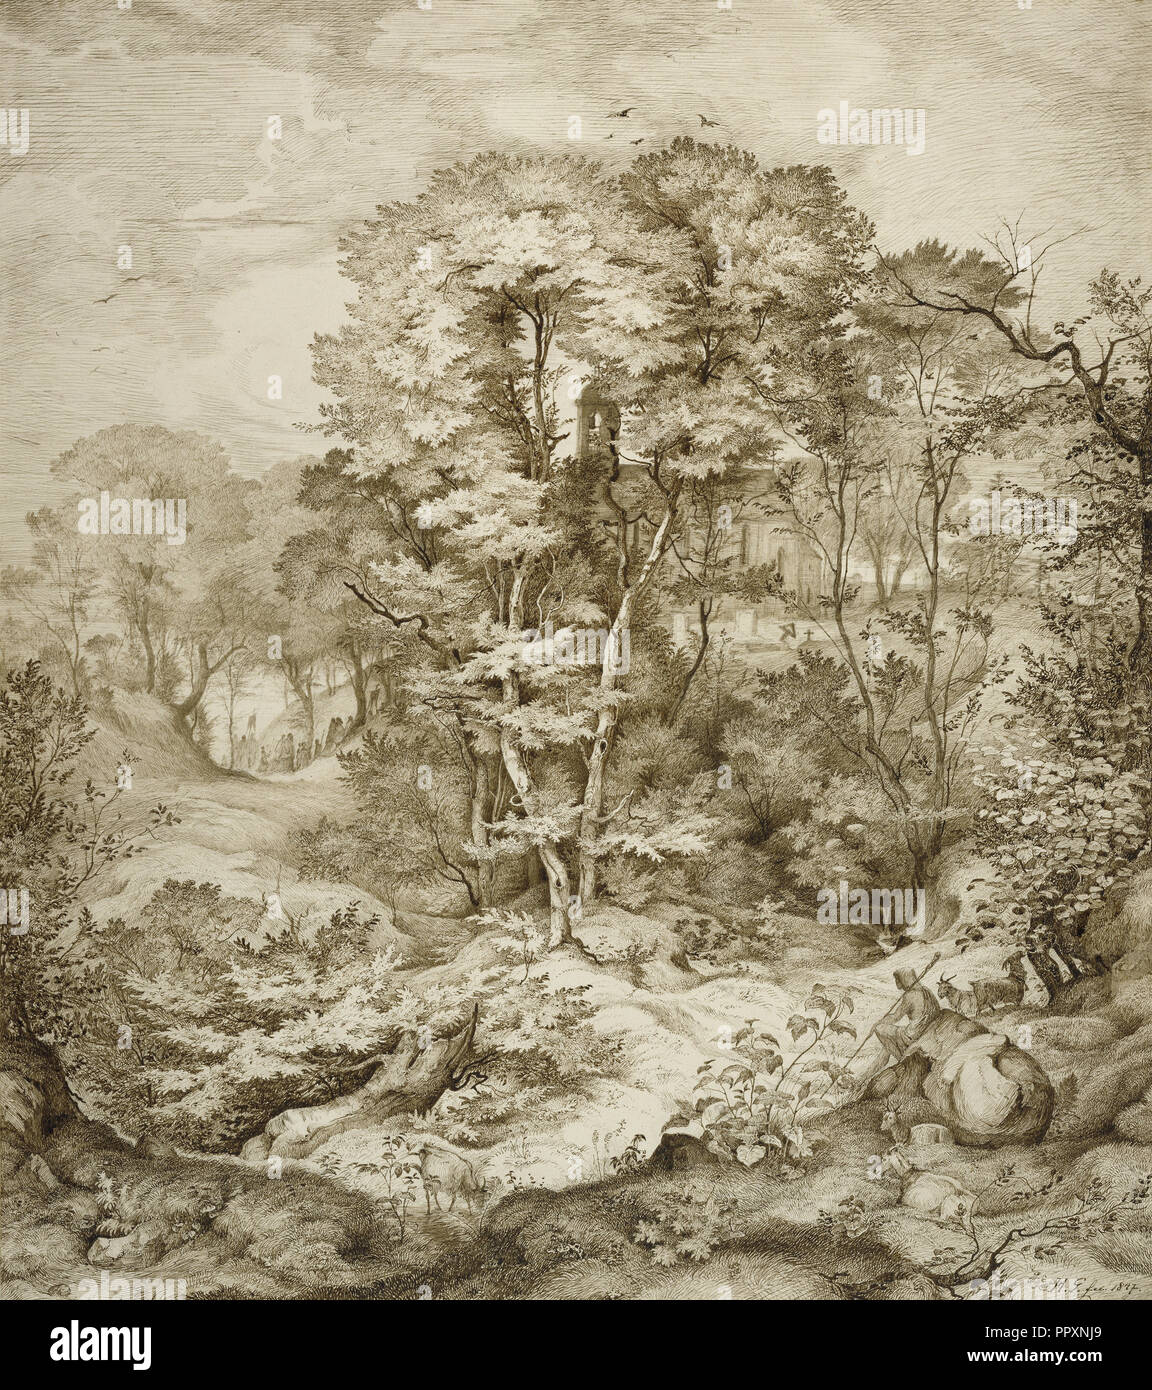 Paesaggio con cappella della foresta; Heinrich Johann Gärtner, Tedesco, 1828 - 1909, Germania; 1847; penna e il marrone scuro inchiostro con grafite Foto Stock